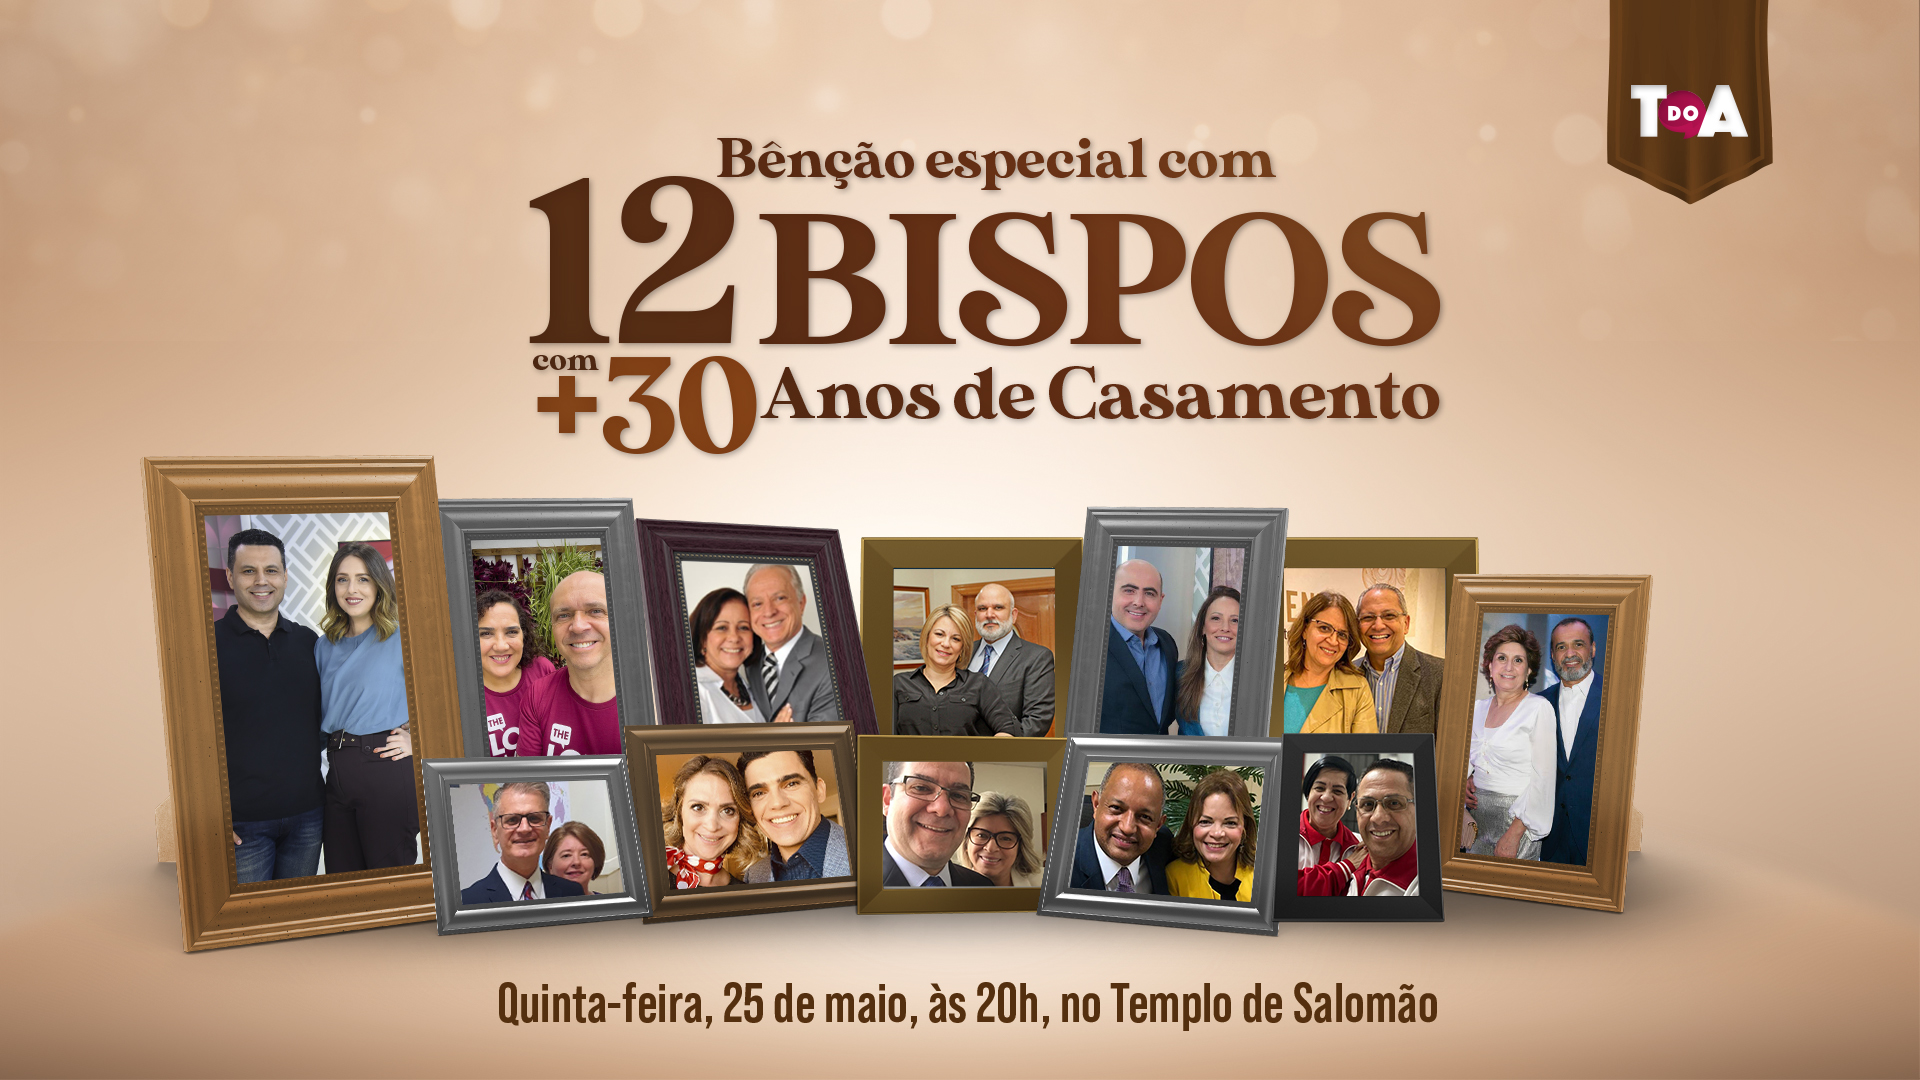 Bênção Especial com 12 Bispos com mais de 30 anos de casamento